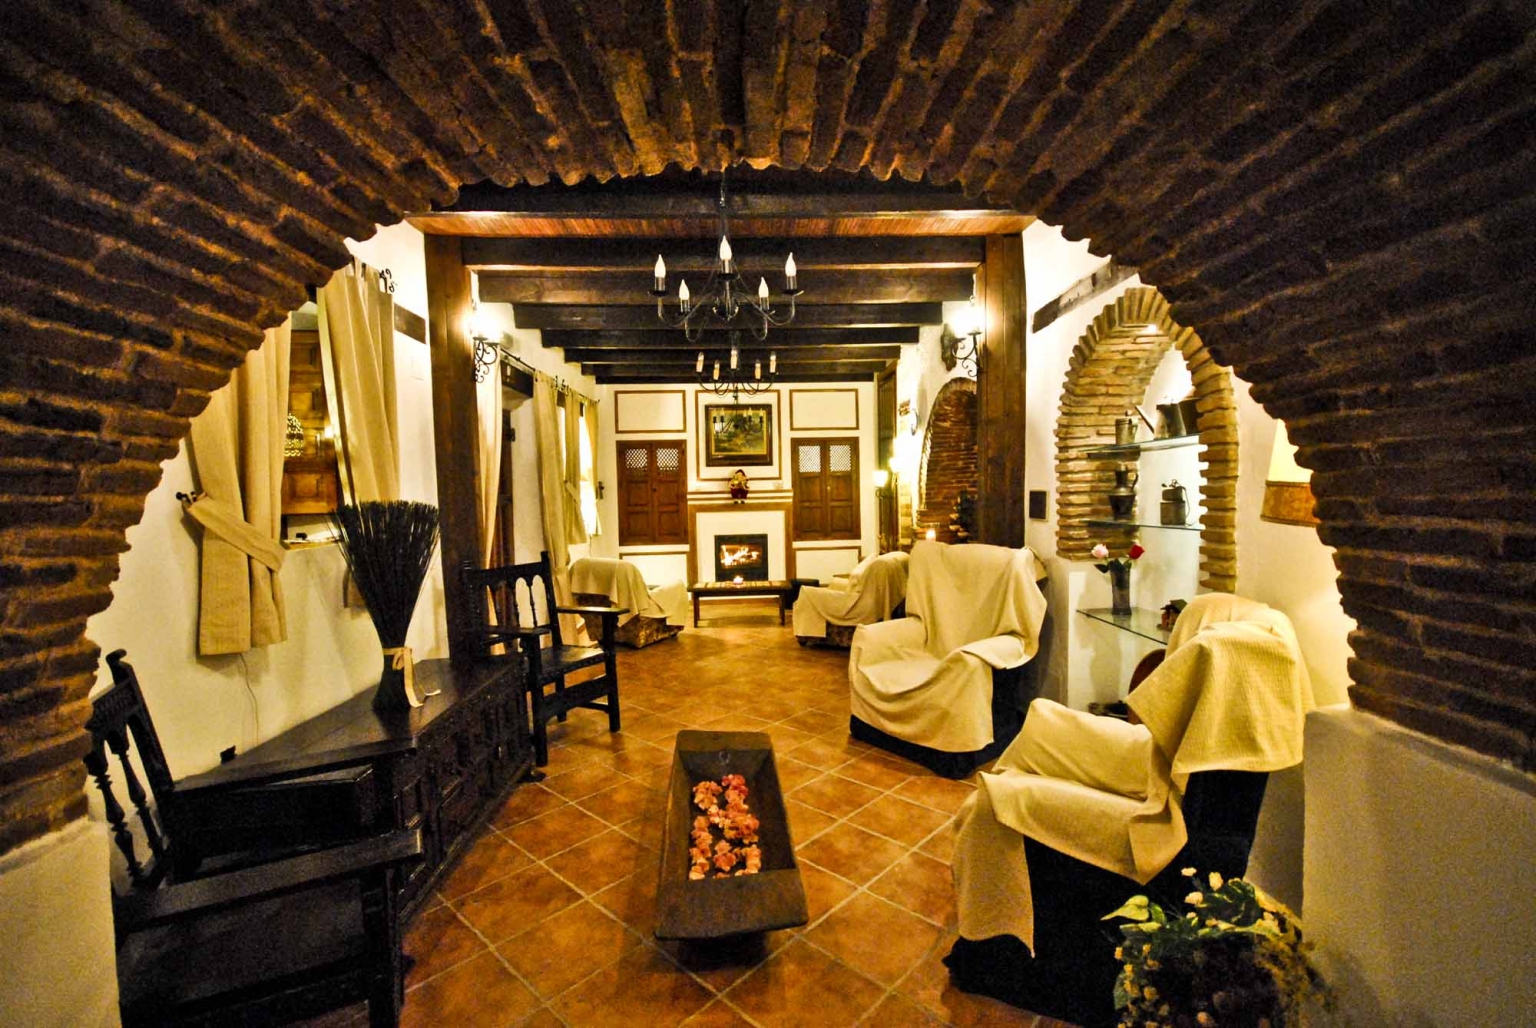 Salón comedor común con chimenea y pequeña cocina, para tus reuniones familiares o empresariales, en Cortijo Las Monjas. Un lugar acogedor en la Alta Axarquía, interior de la Costa del Sol, provincia de Málaga, Andalucía